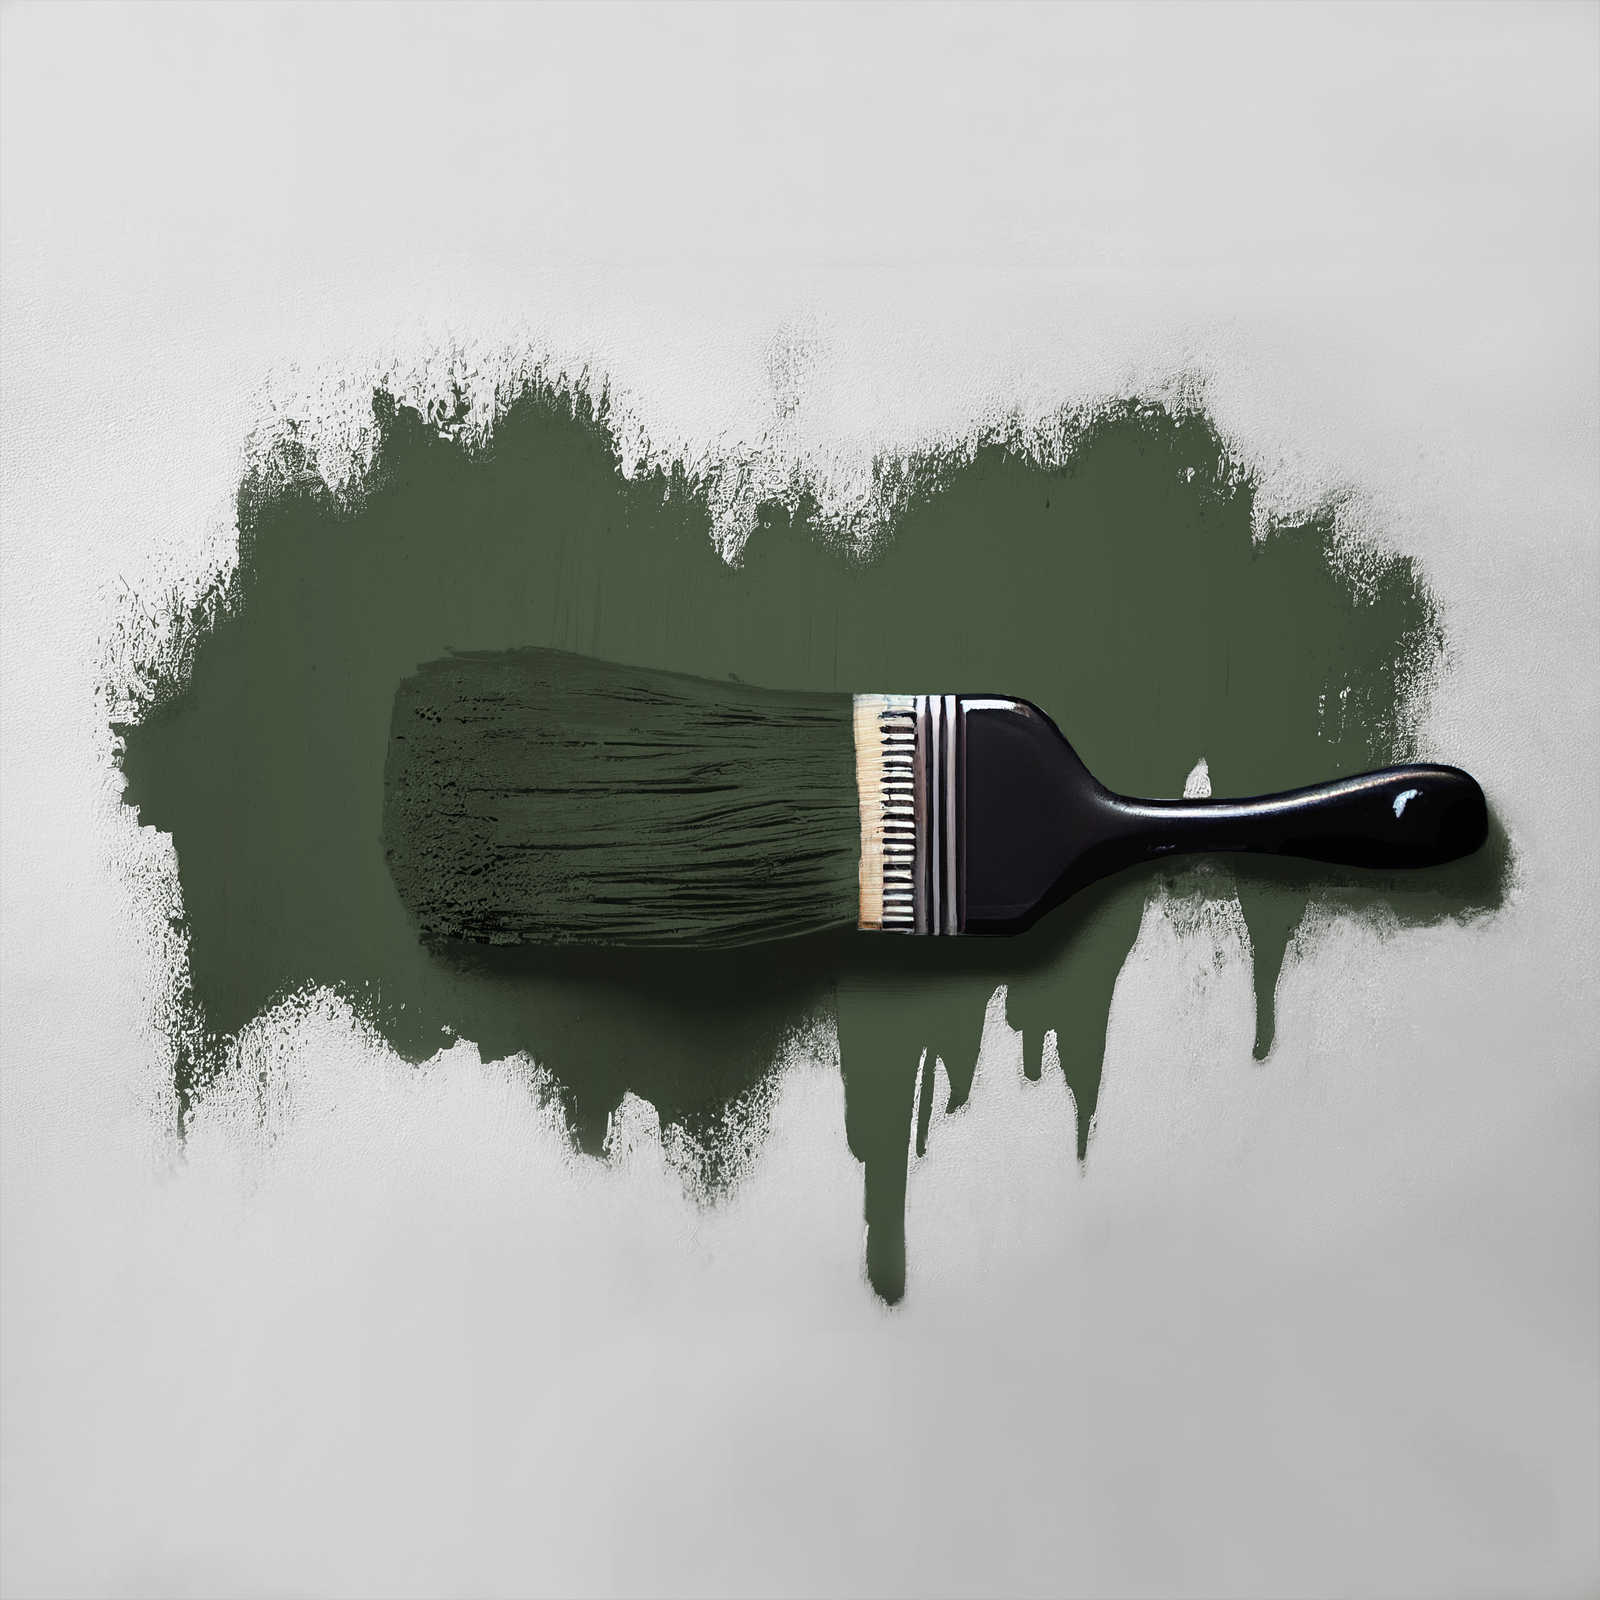             Pittura murale TCK4006 »Zippy Zuchini« in verde scuro intensivo – 2,5 litri
        